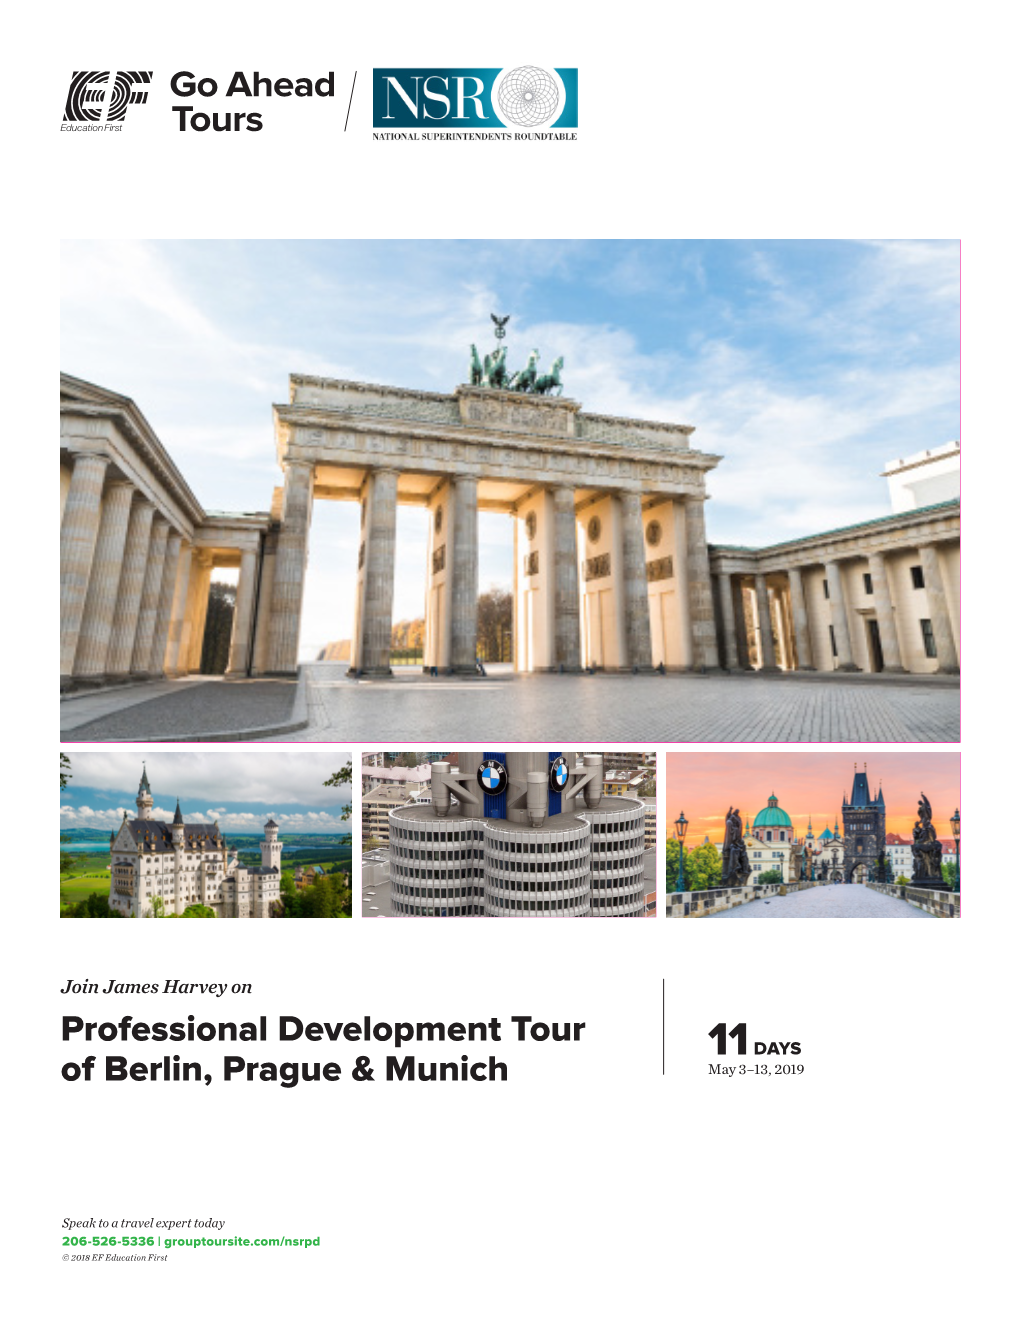 Professional Development Tour of Berlin, Prague & Munich